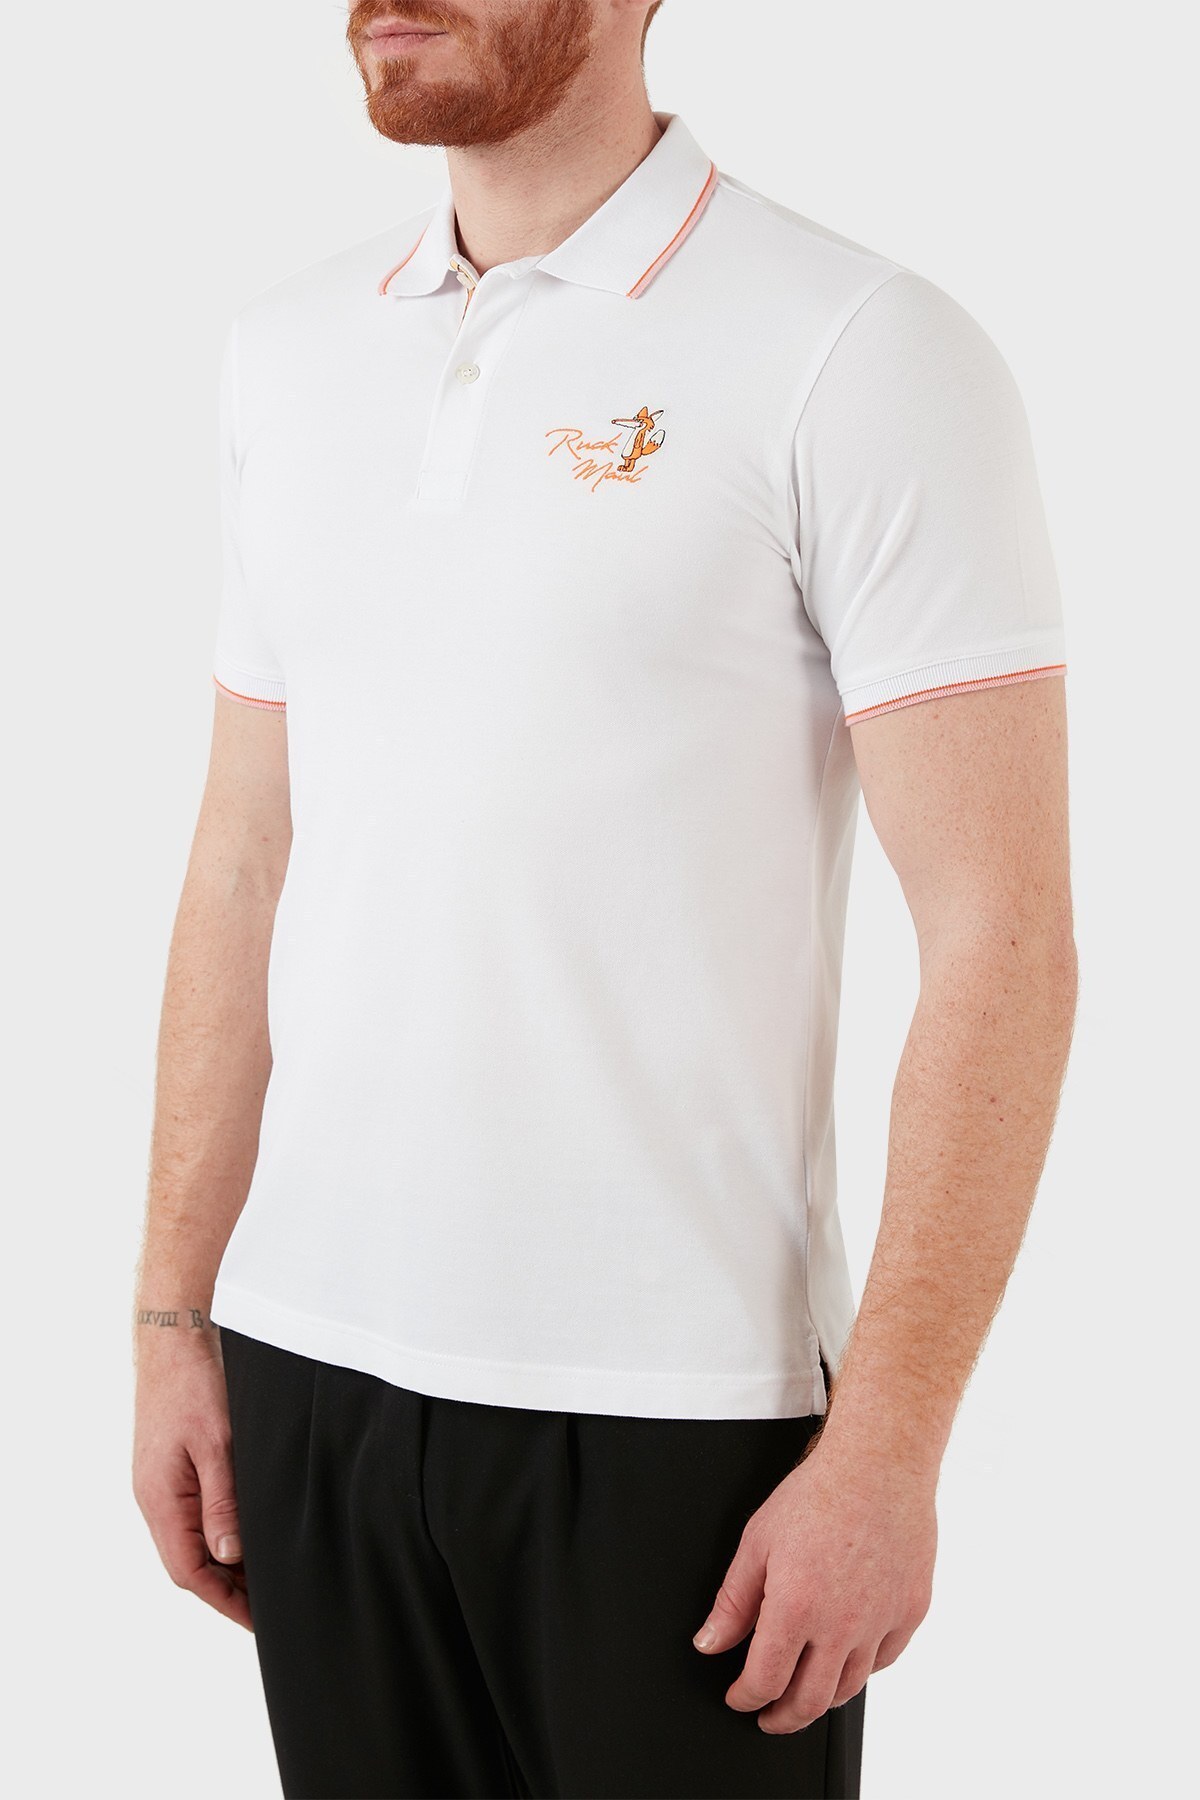 Ruck & Maul Pamuklu Düğmeli T Shirt Erkek Polo RMM01000716 BEYAZ